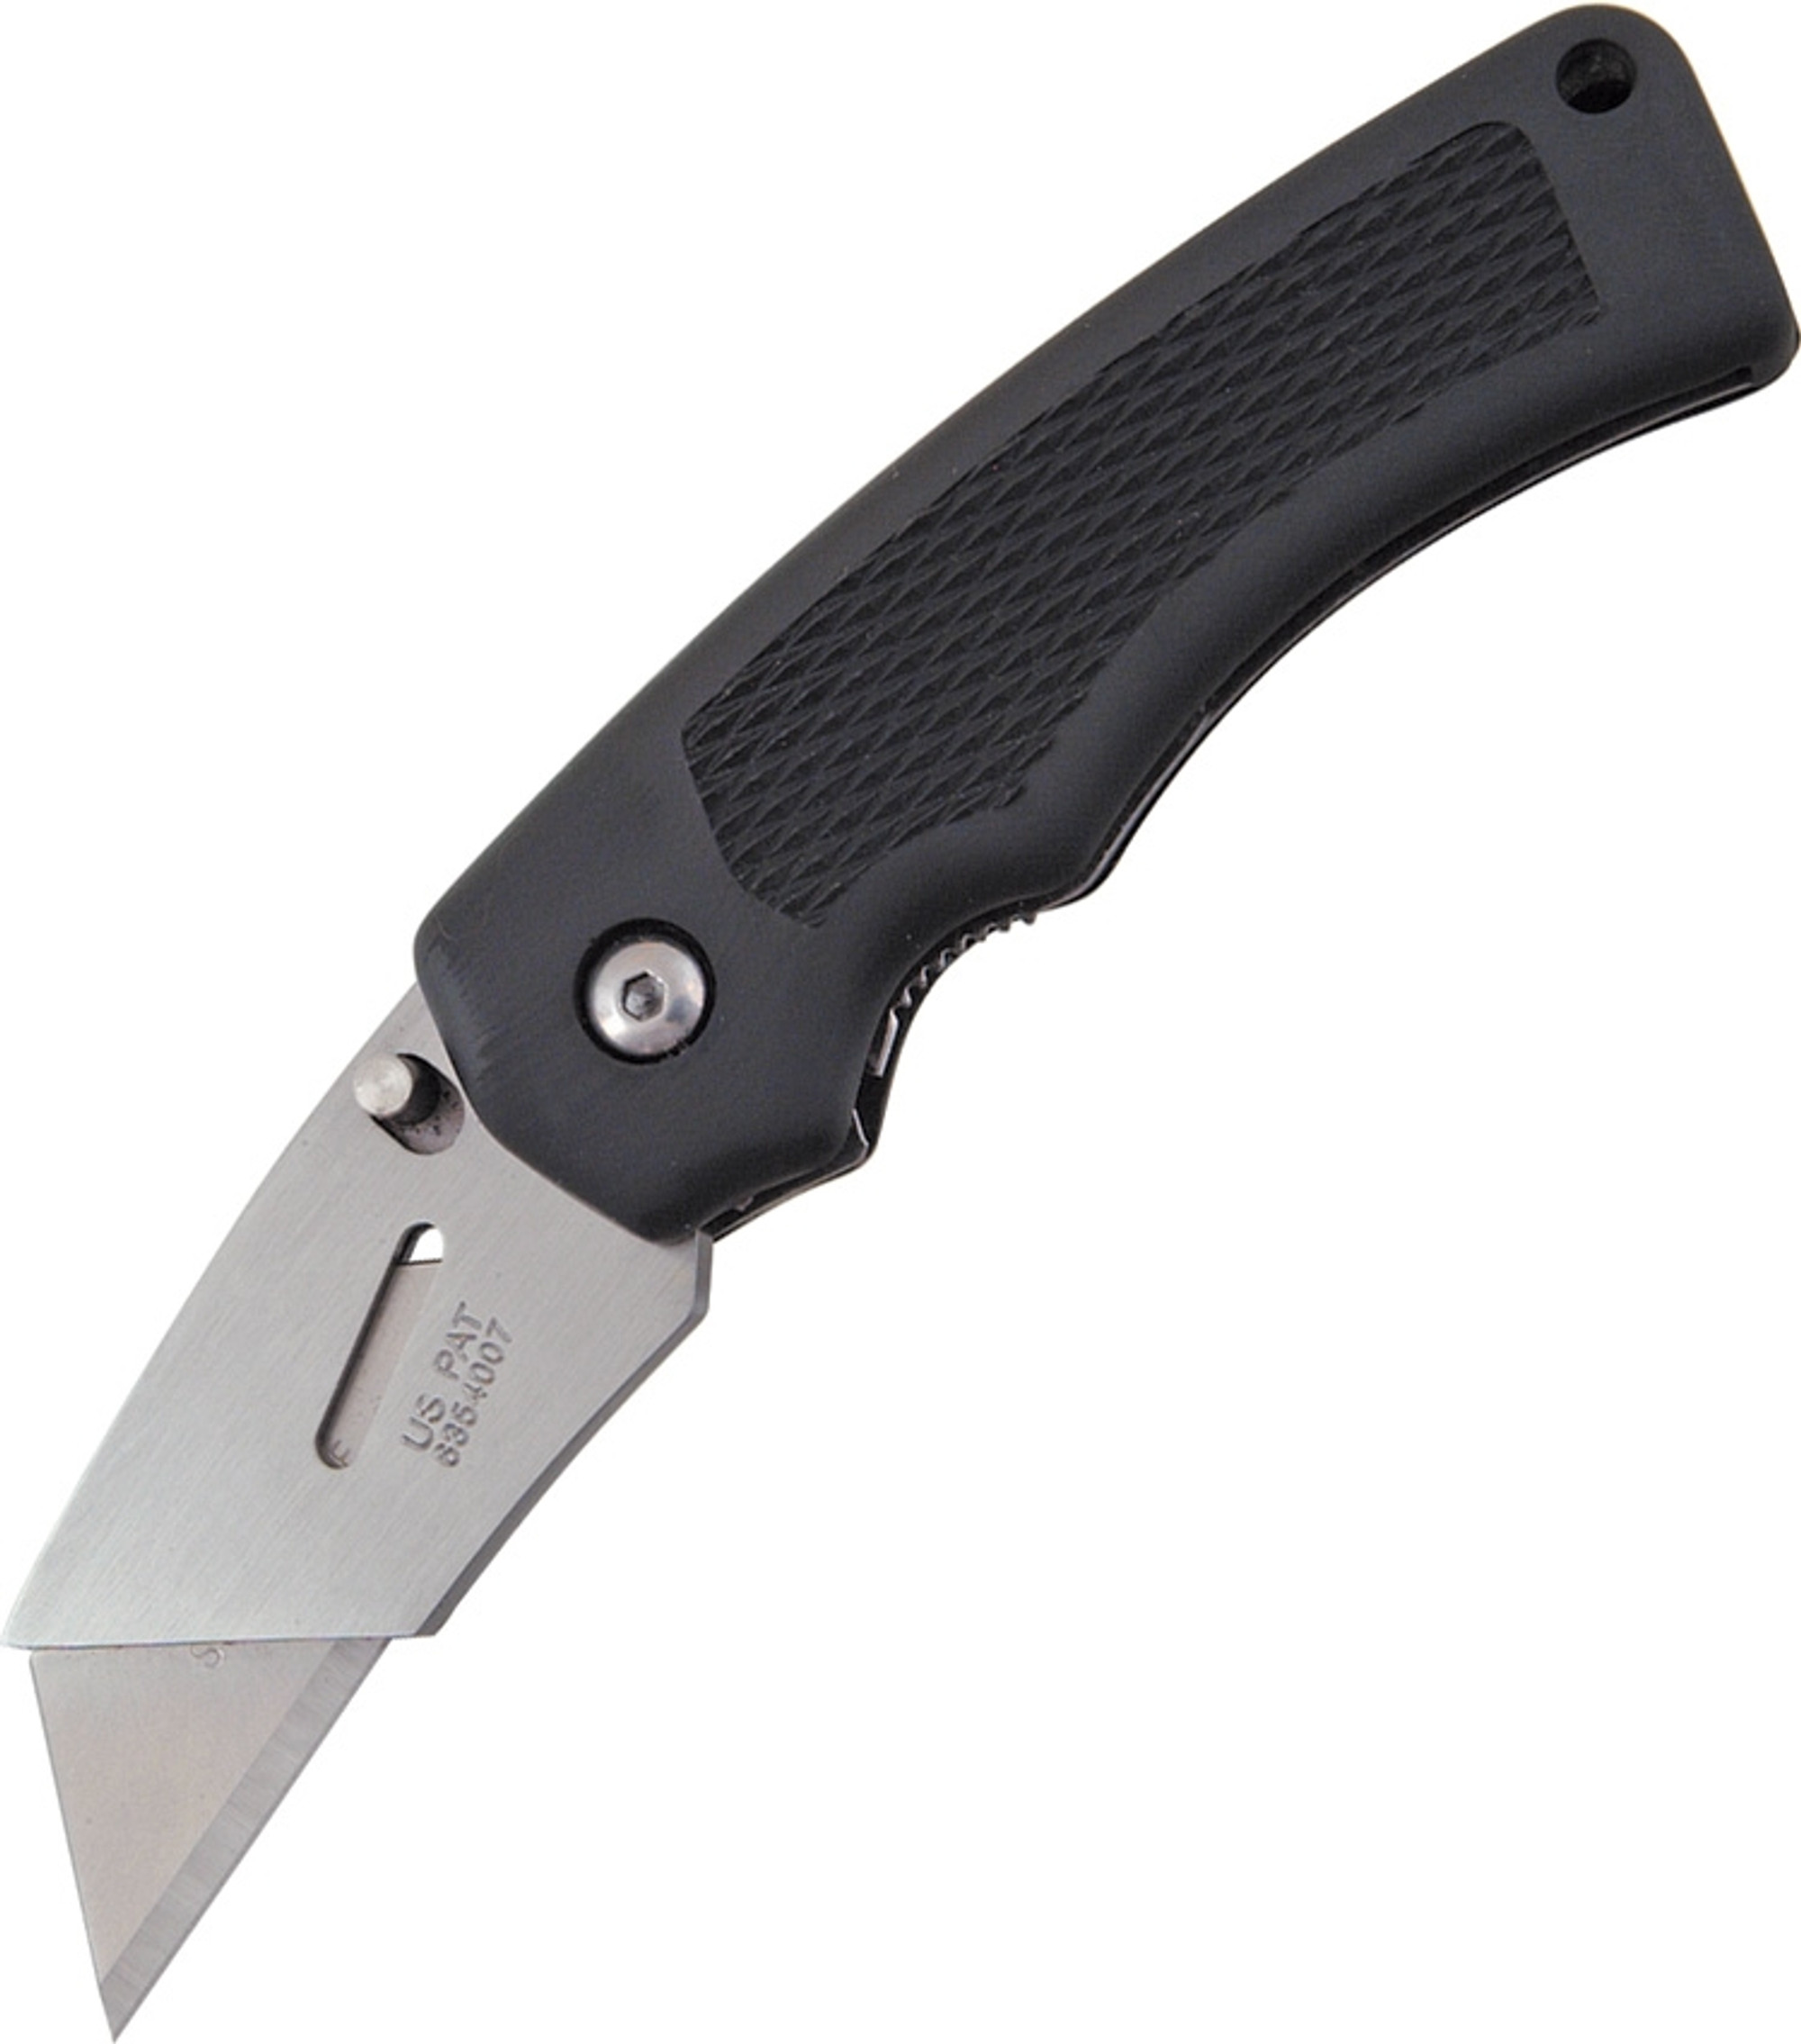 Gerber SuperKnife SK Edge Folding Knife - Black